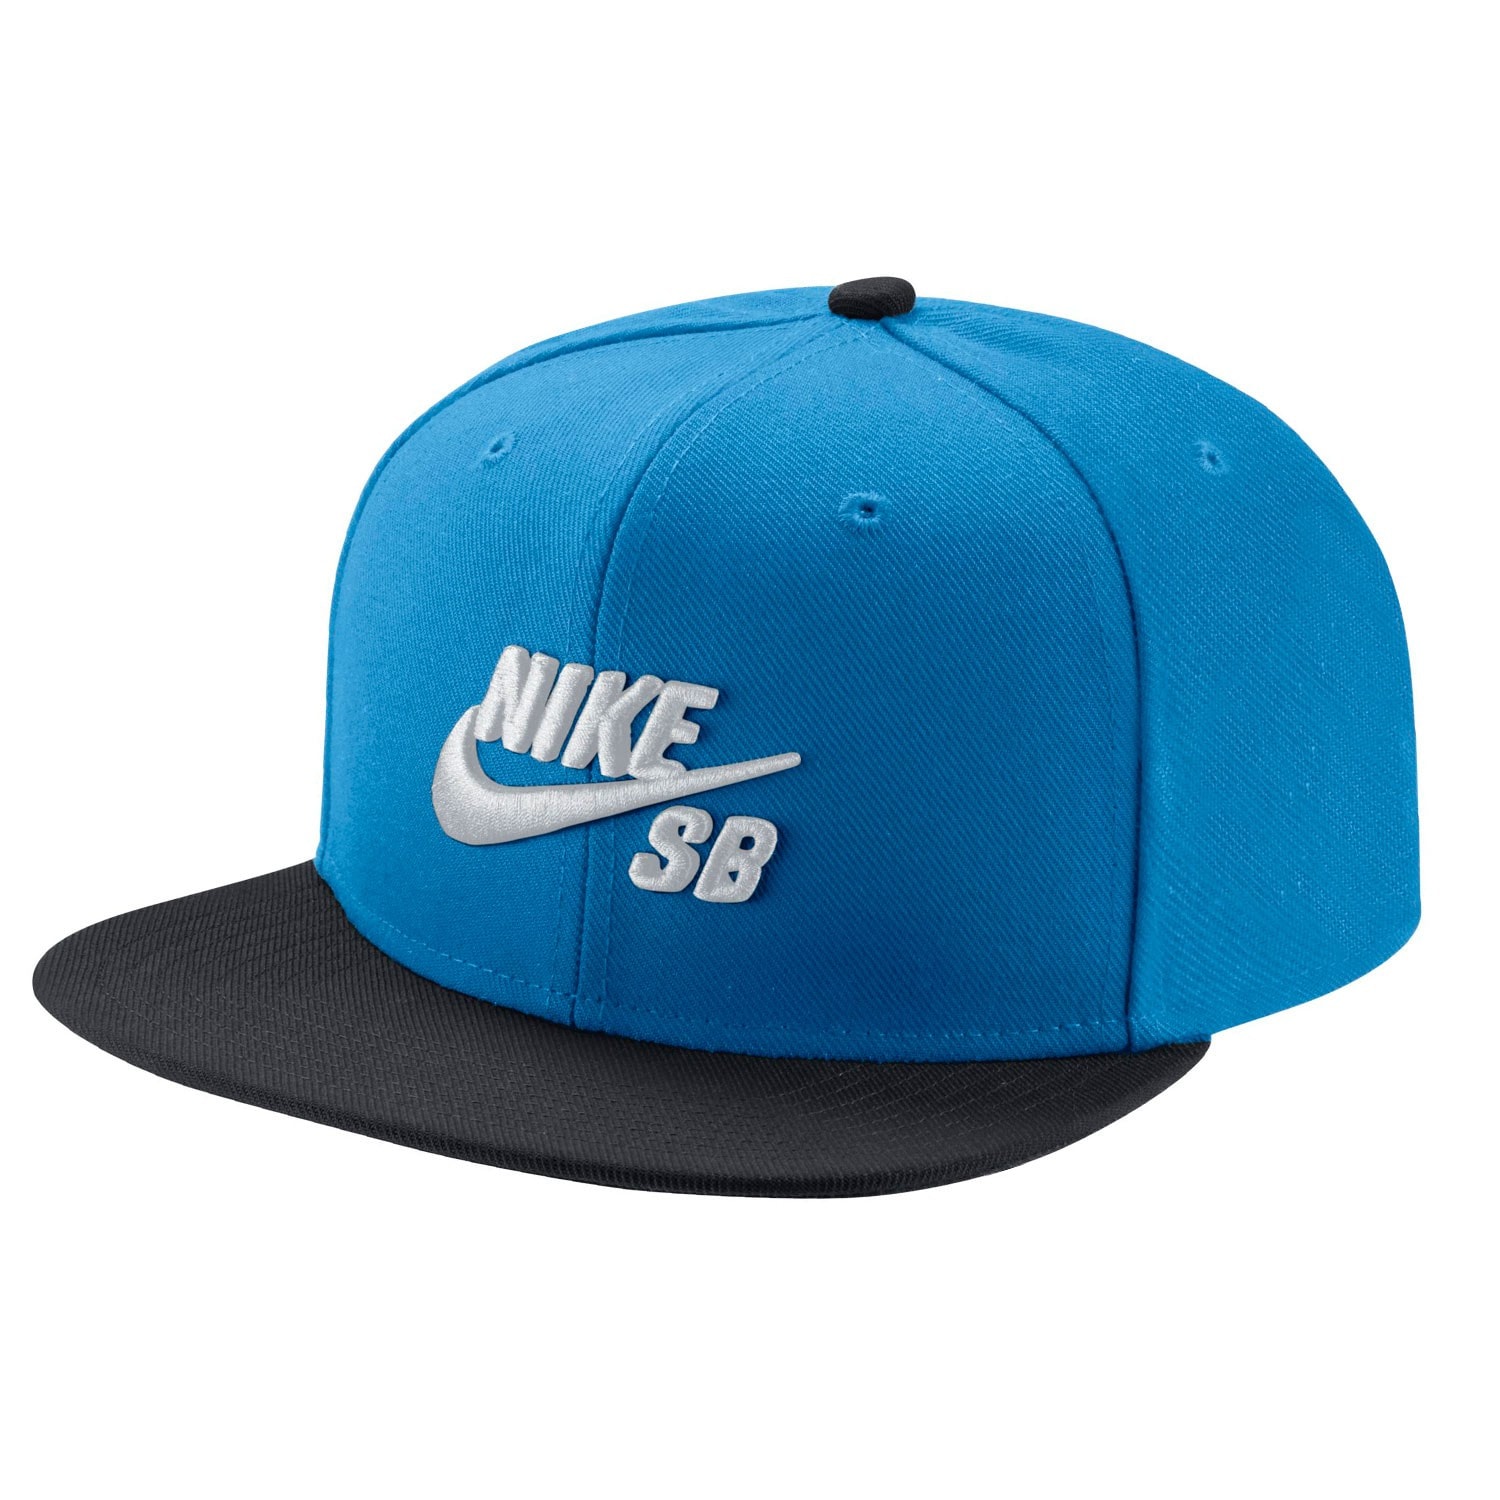 Nike SB Nike Sb Icon Snapback photo blue/black/white | Snowboard Zezula